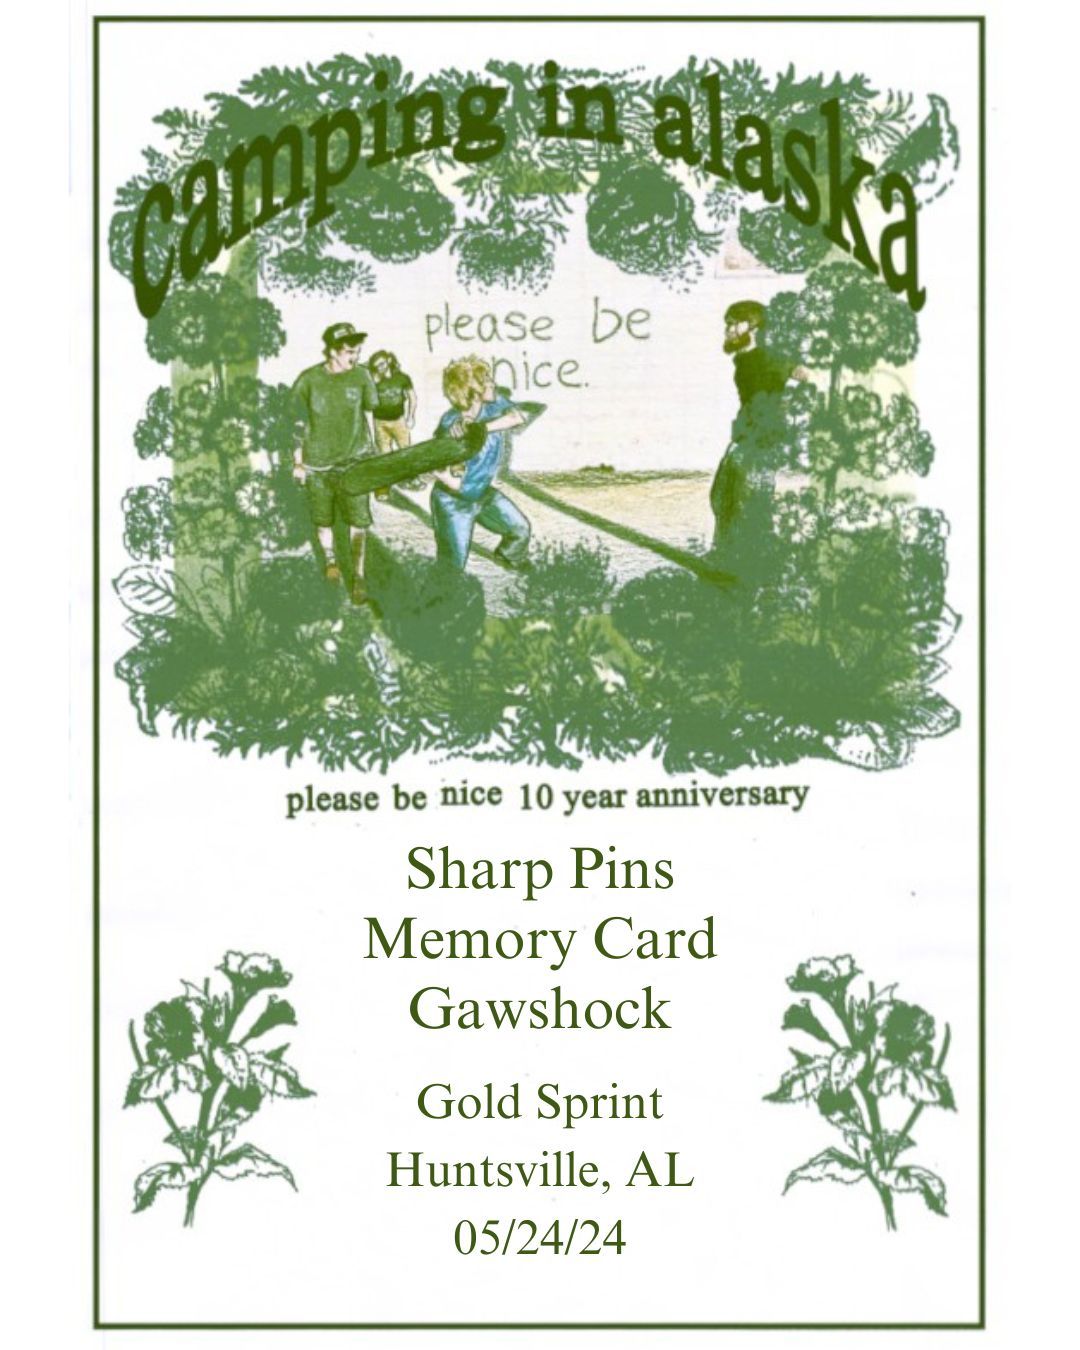 Camping in Alaska, Sharp Pins (CHI), Memory Card, Gawshock 05\/24 at Gold Sprint